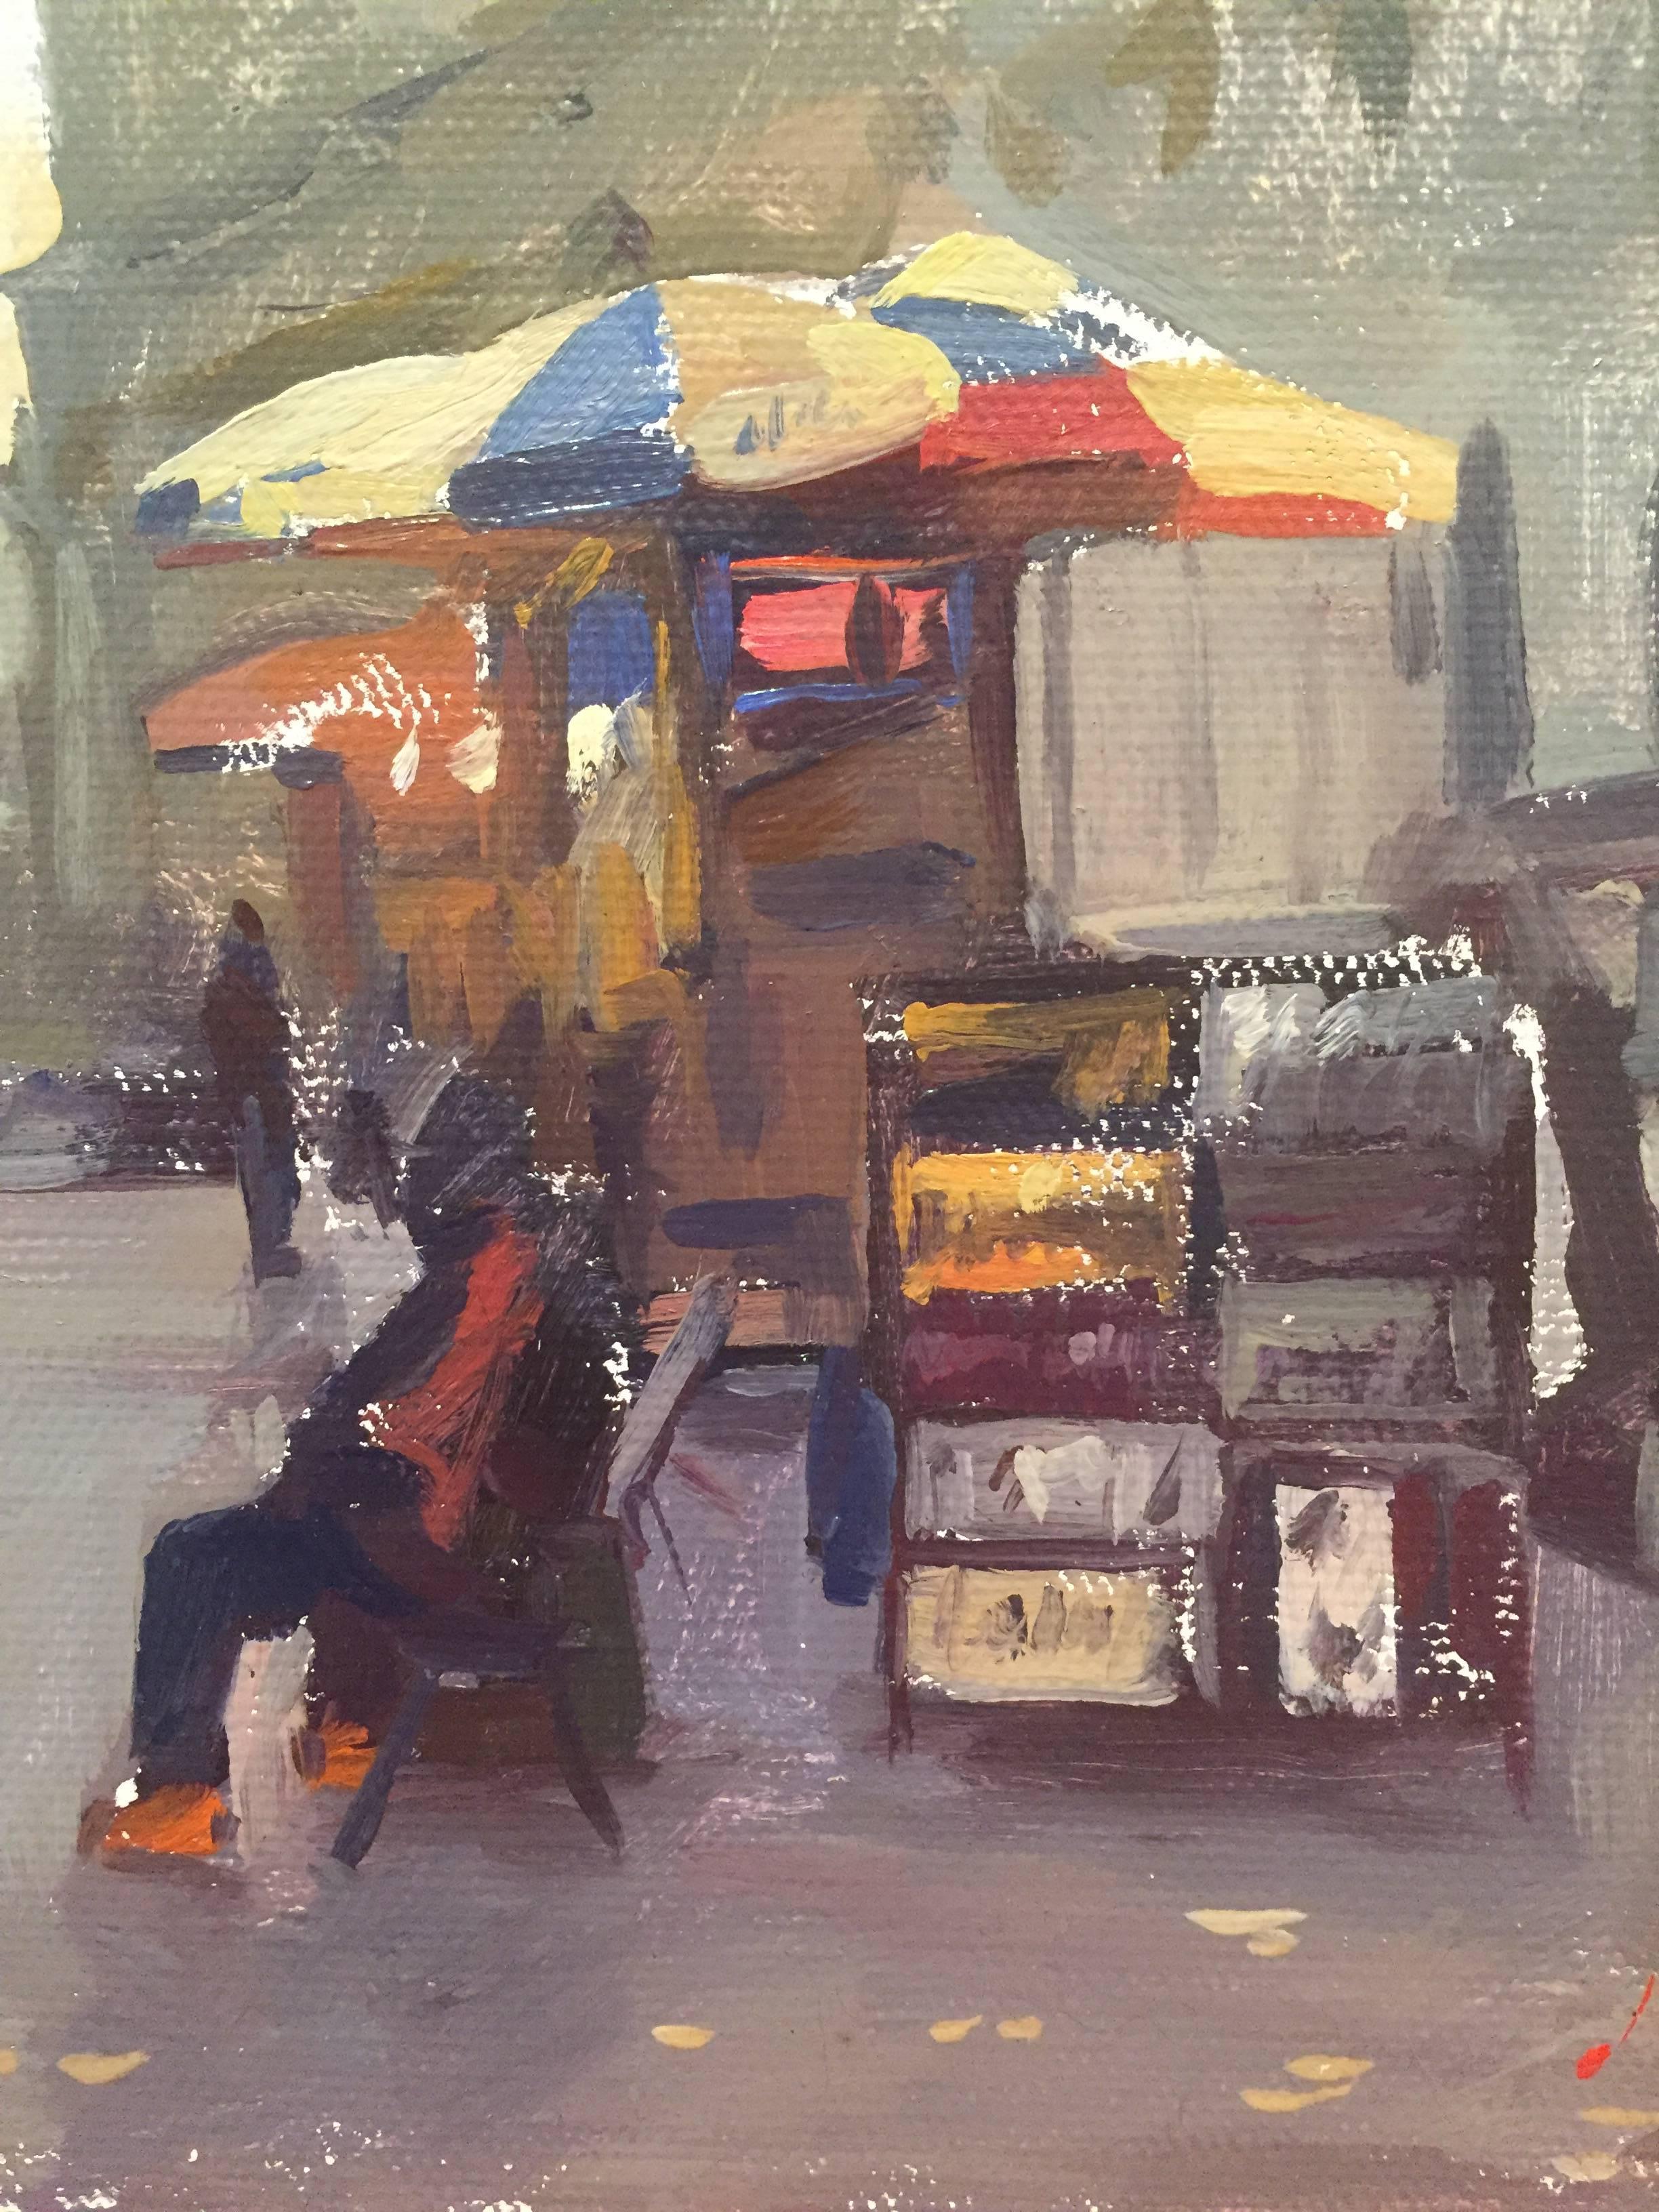 Ein Ölgemälde mit einer Szene aus New York City. Auf einem Bürgersteig in Manhattan sitzt eine Figur vor einem Stand mit Kunstwerken unter einem bunten Regenschirm. Kleine grau-lilafarbene Linien bilden Figuren in der Ferne. Ein paar grüne